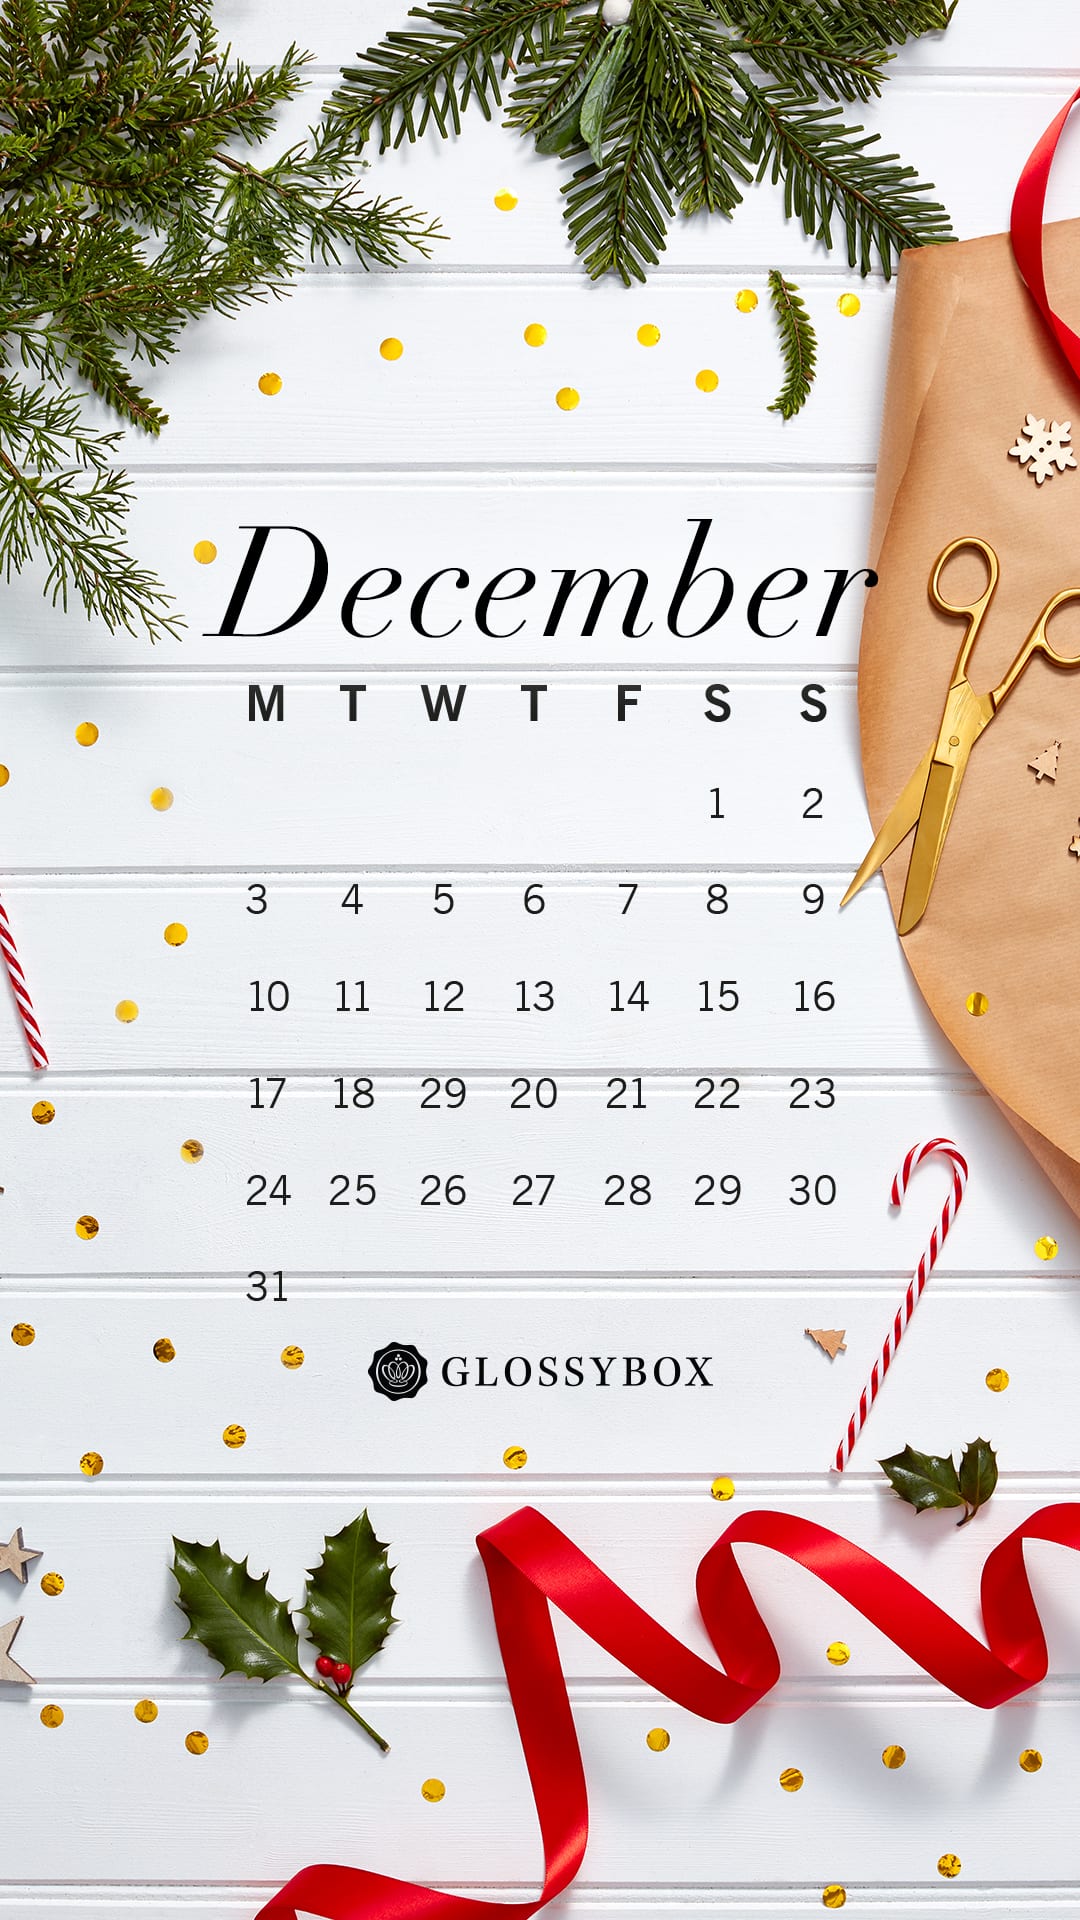 December 2018 GLOSSYBOX Calendar